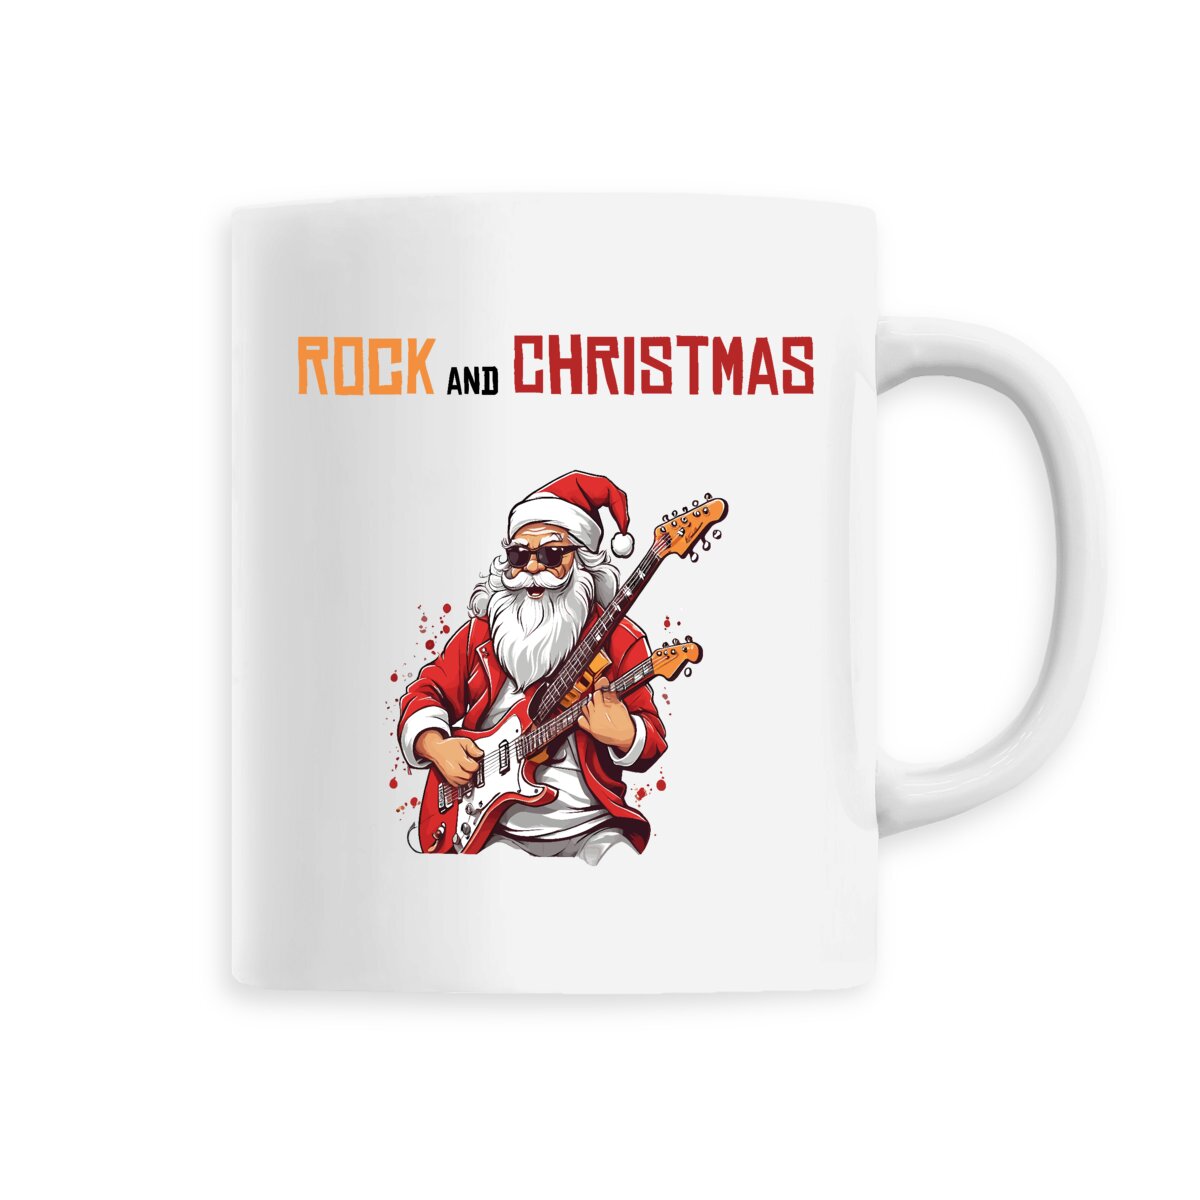 Mug rock and christmas